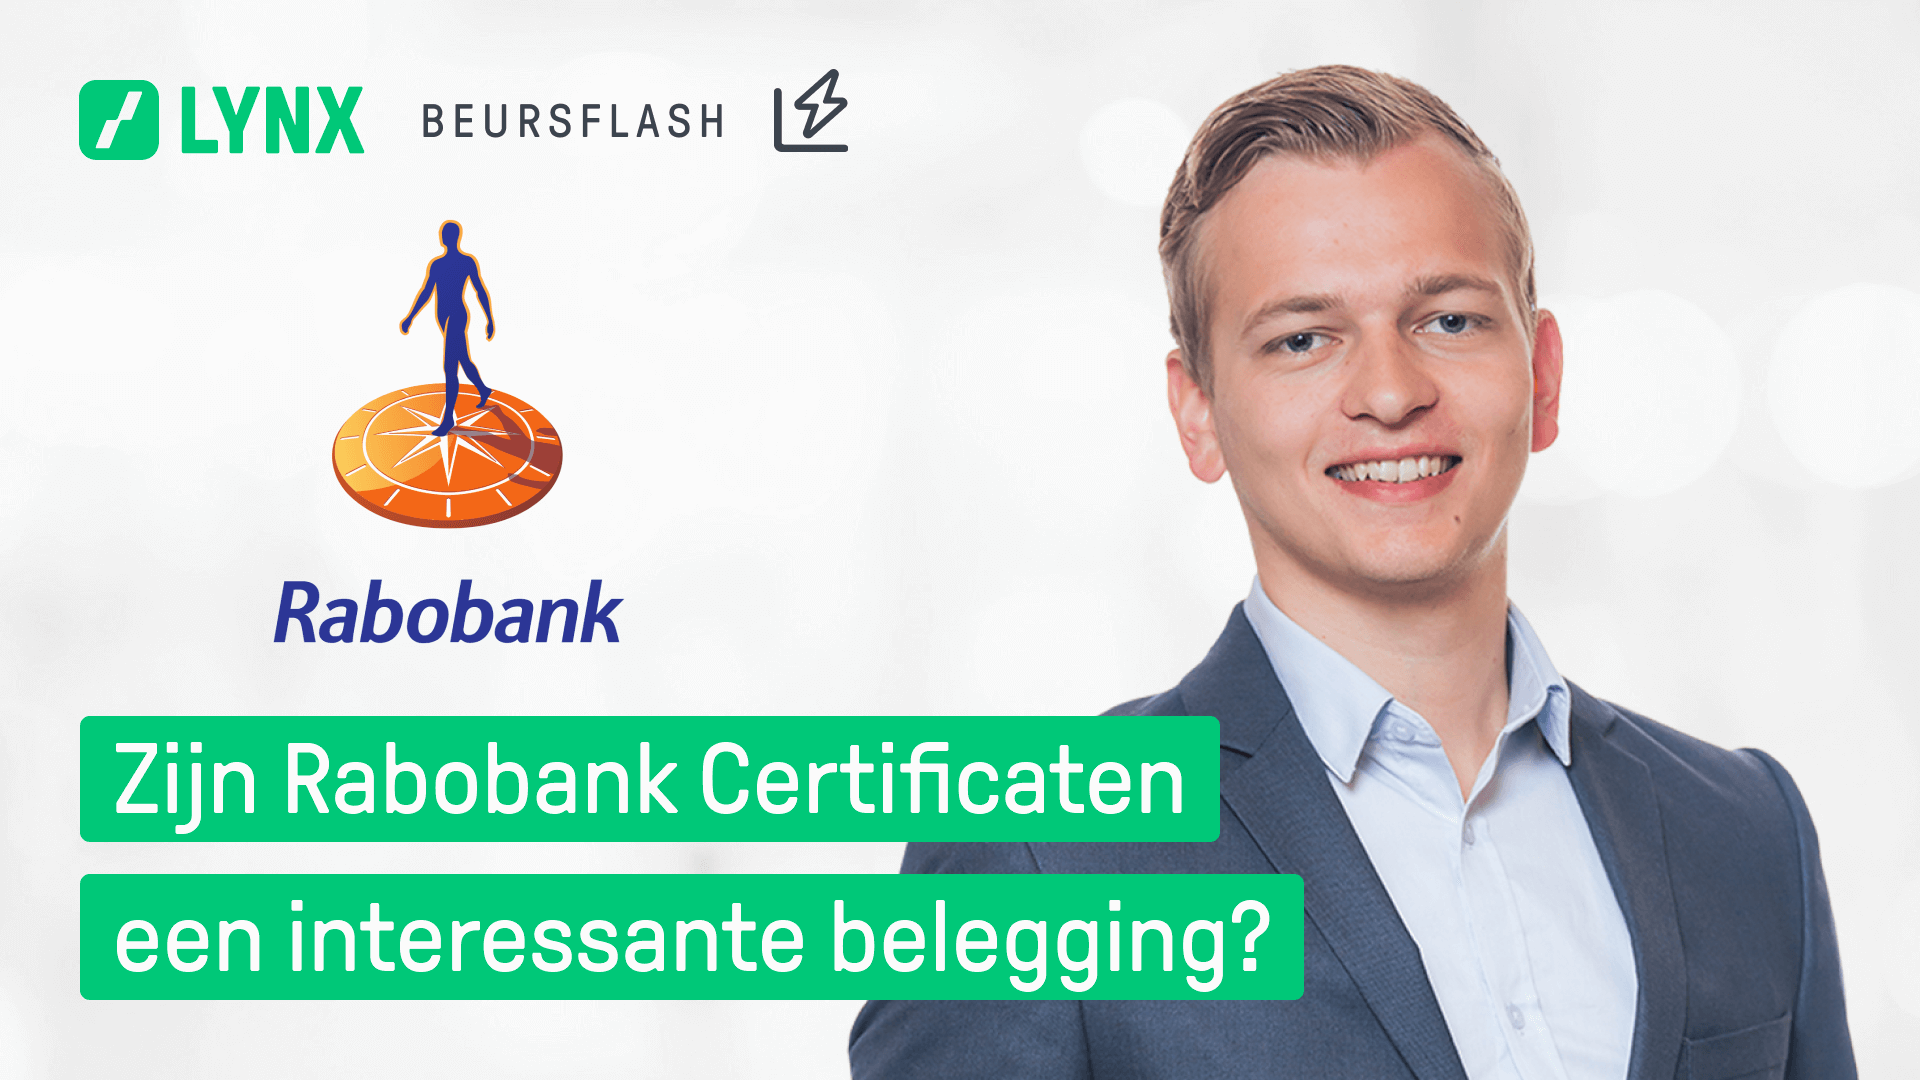 rabobank certificaten koers - rabobank certificaten kopen - beleggen in rabobank